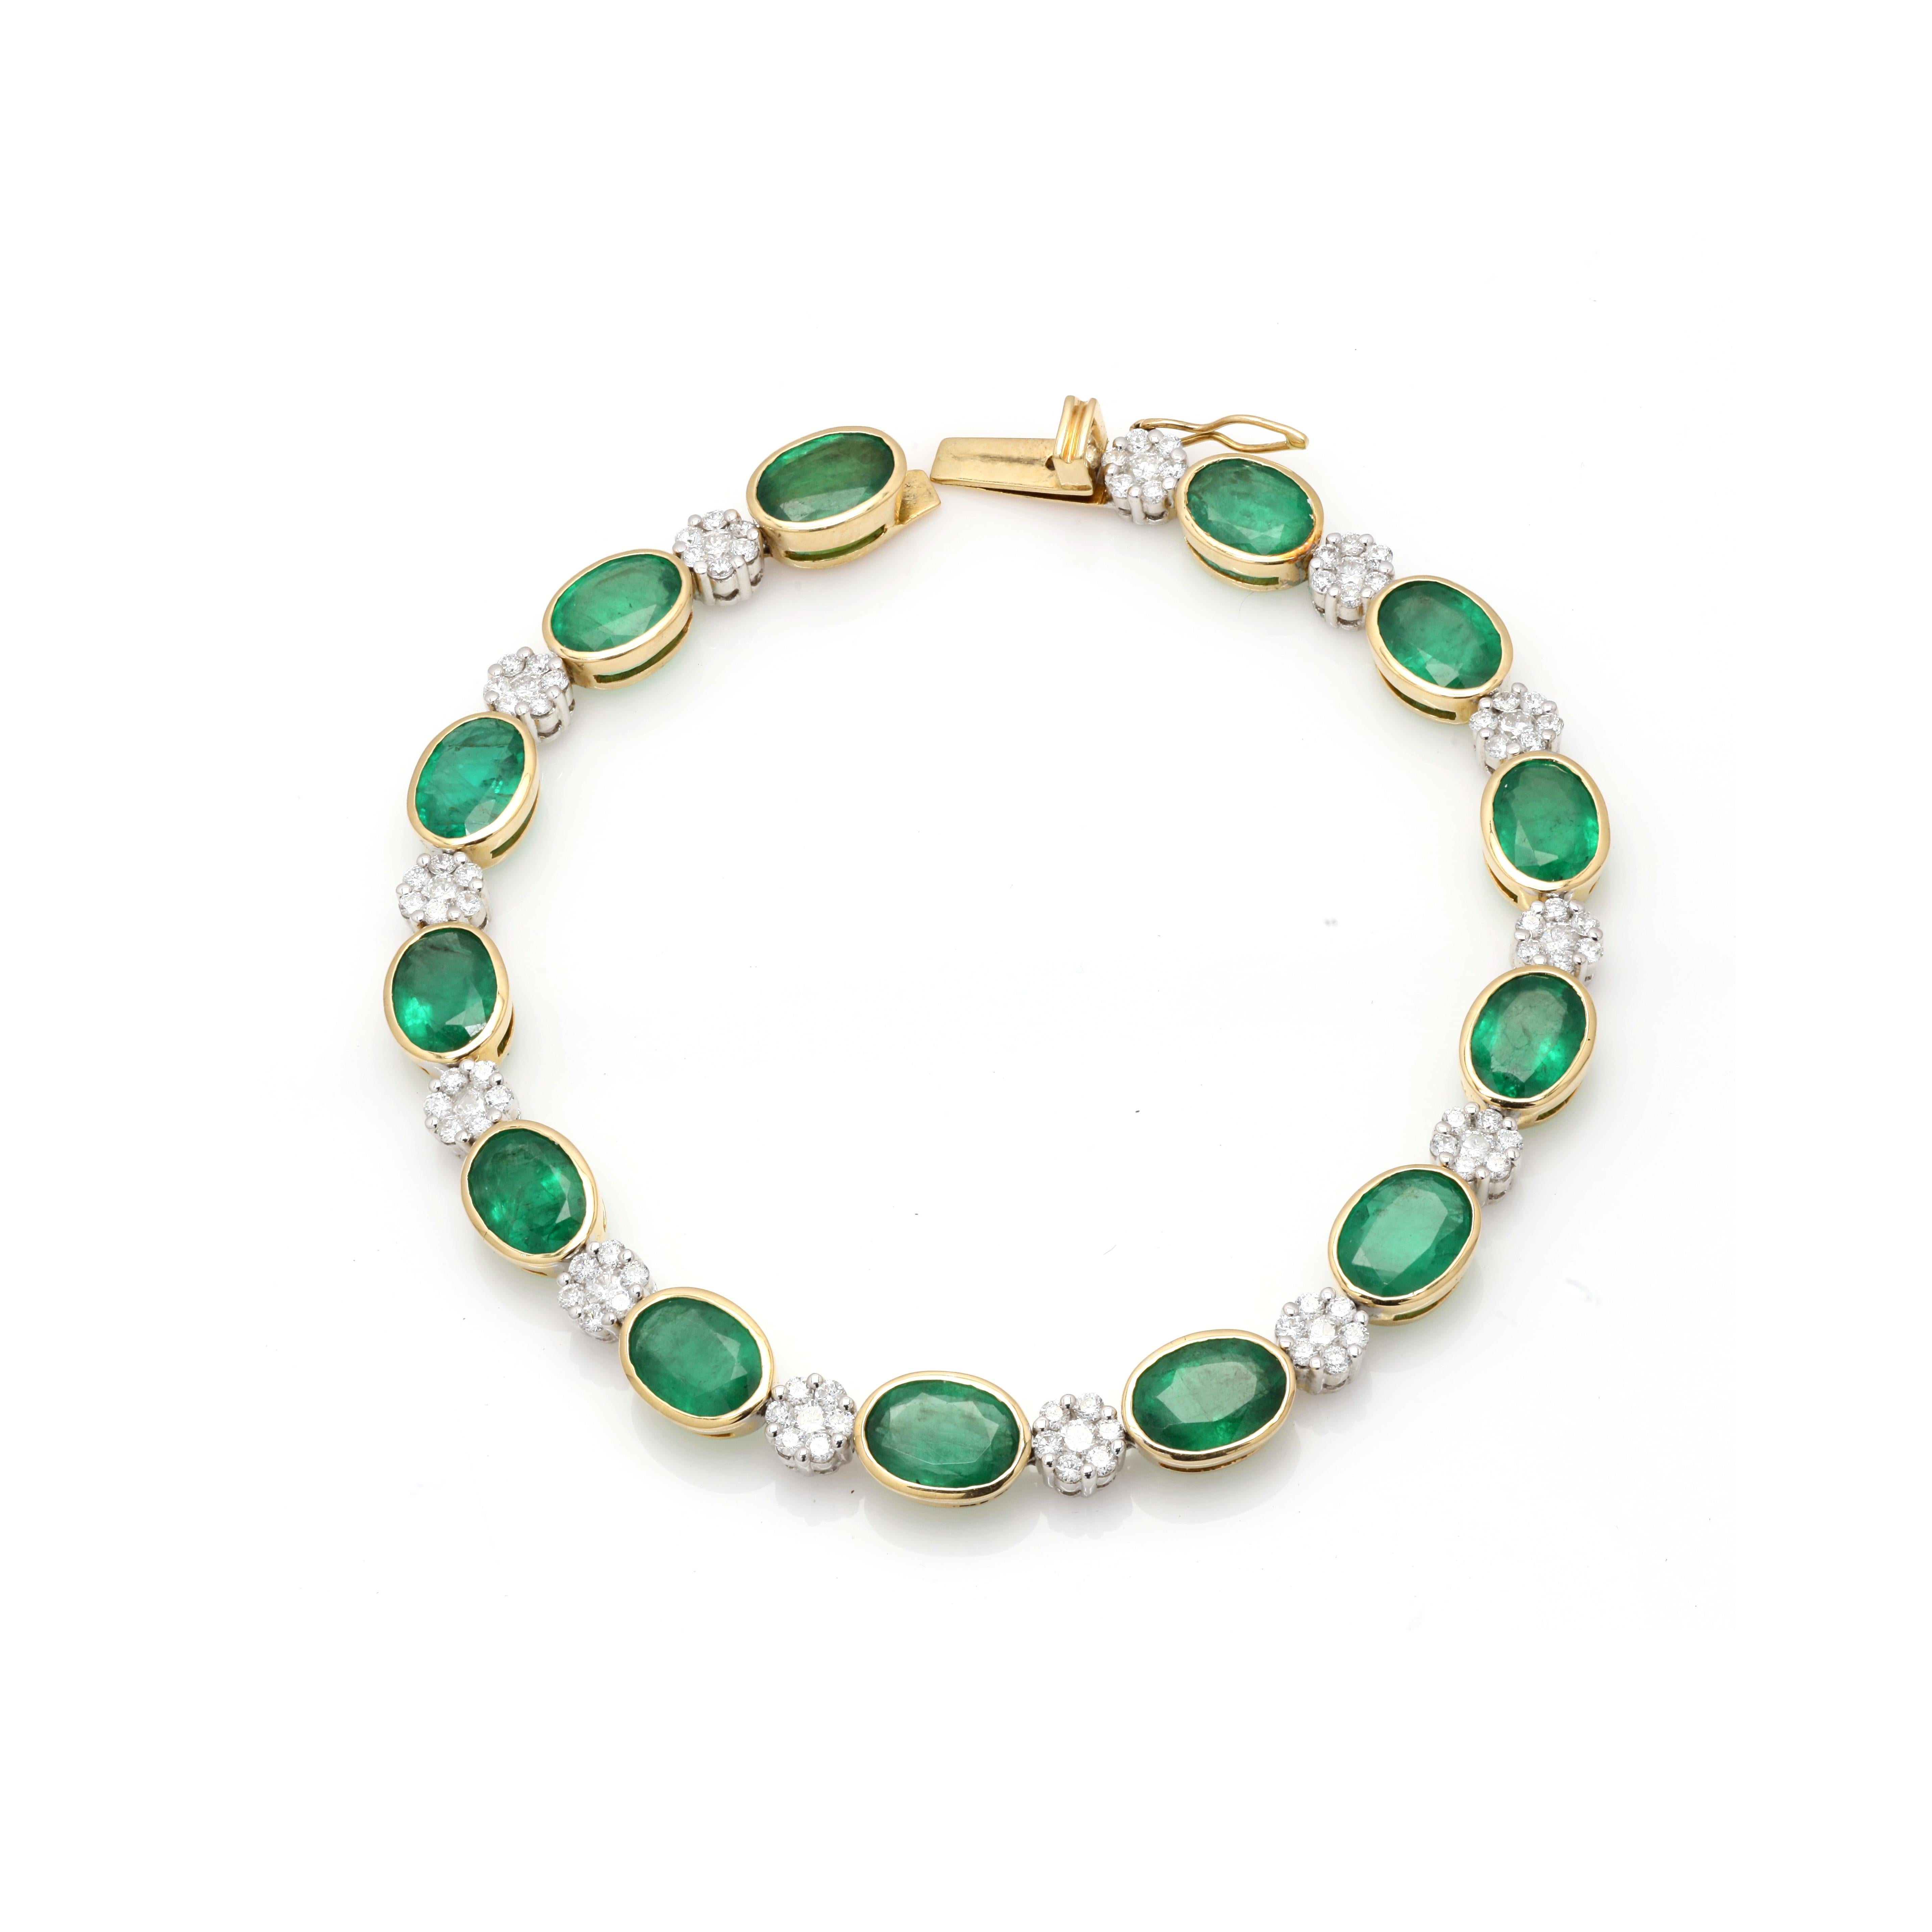 Dieses Alternate Diamond and Emerald Tennis Bracelet aus 18 Karat Gold präsentiert 13 unendlich funkelnde natürliche Smaragde mit einem Gewicht von 14,35 Karat und Diamanten mit einem Gewicht von 1,84 Karat. Es misst 7,5 Zoll in der Länge. 
Smaragd